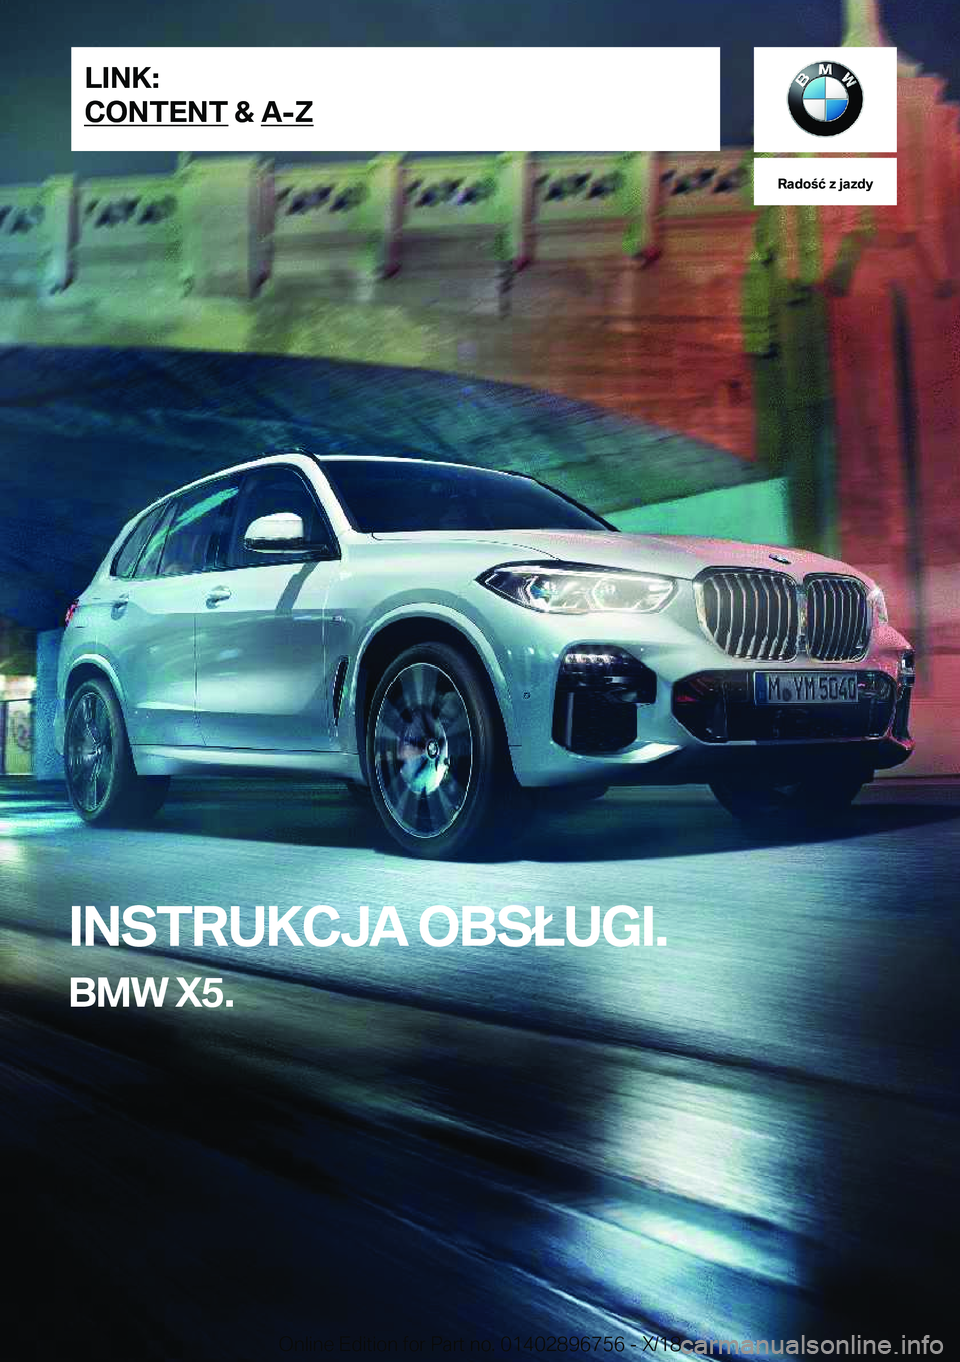 BMW X5 2019  Instrukcja obsługi (in Polish) �R�a�d�o�ć��z��j�a�z�d�y
�I�N�S�T�R�U�K�C�J�A��O�B�S�Ł�U�G�I�.
�B�M�W��X�5�.�L�I�N�K�:
�C�O�N�T�E�N�T��&��A�-�Z�O�n�l�i�n�e��E�d�i�t�i�o�n��f�o�r��P�a�r�t��n�o�.��0�1�4�0�2�8�9�6�7�5�6�